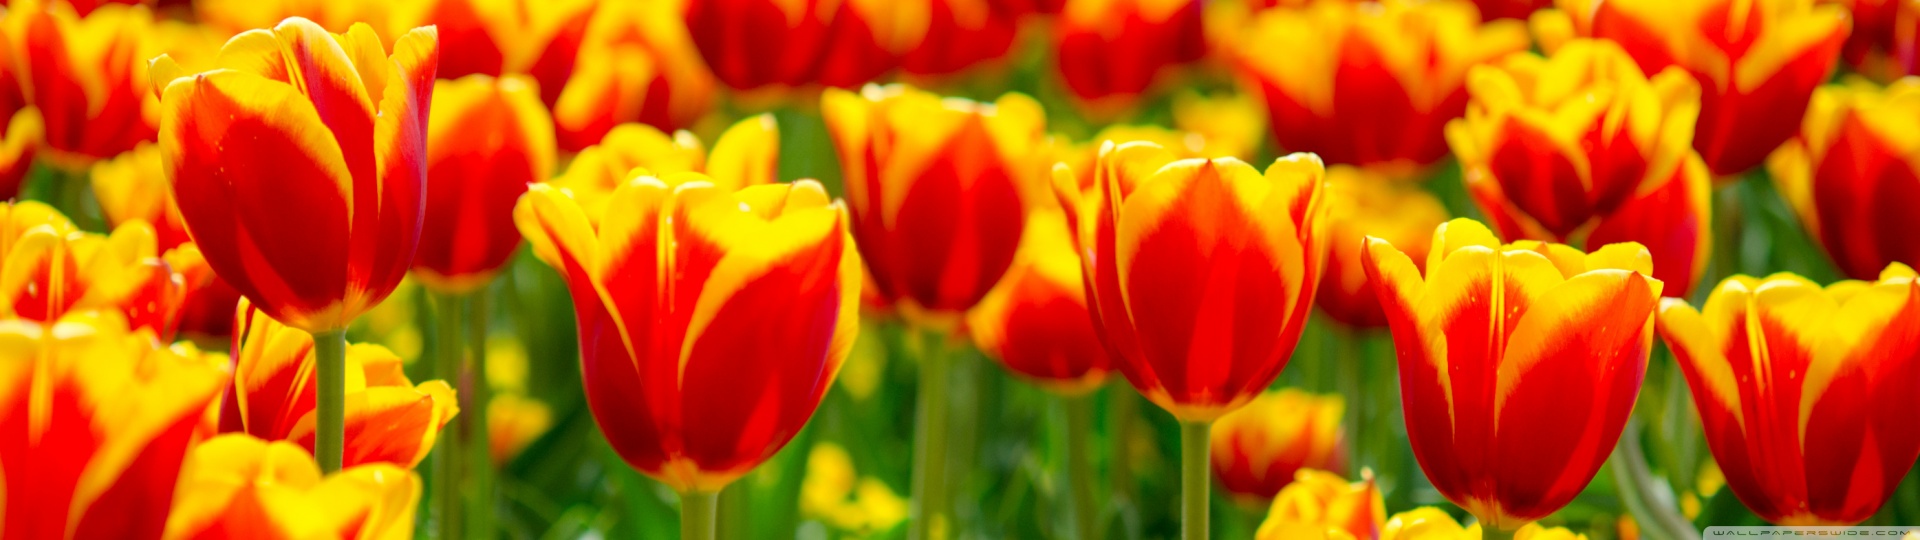 Spring Tulip Fields HD desktop wallpaper : Widescreen : Fullscreen ...